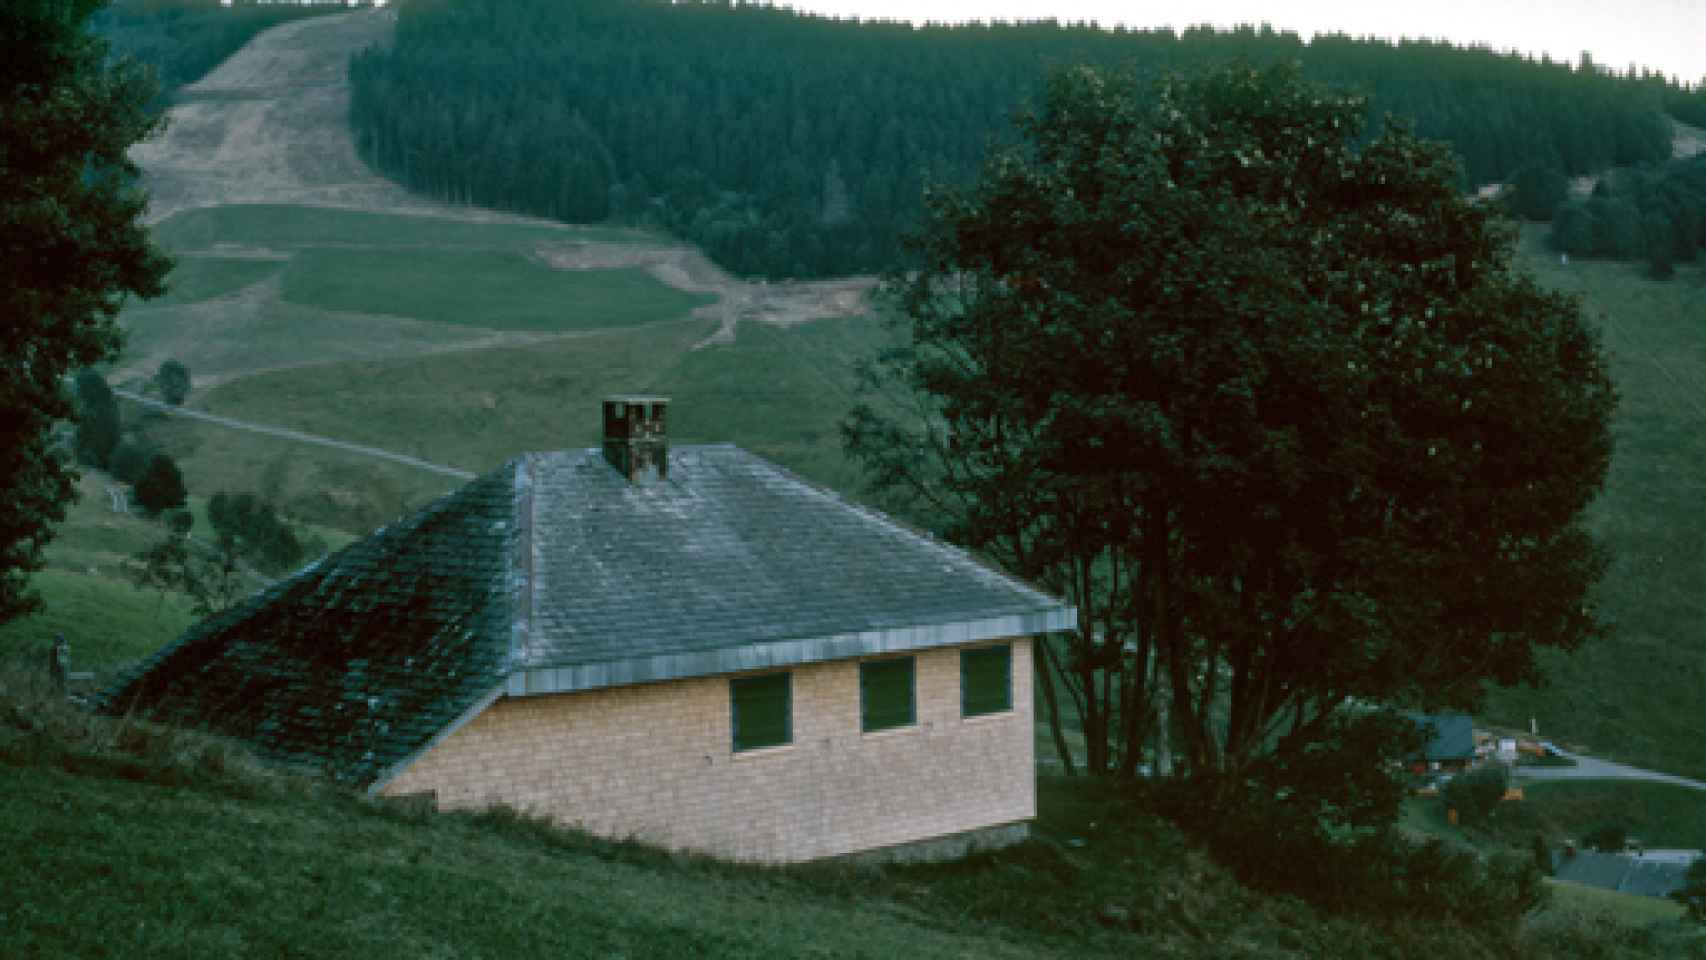 Image: La soledad centrada de una cabaña